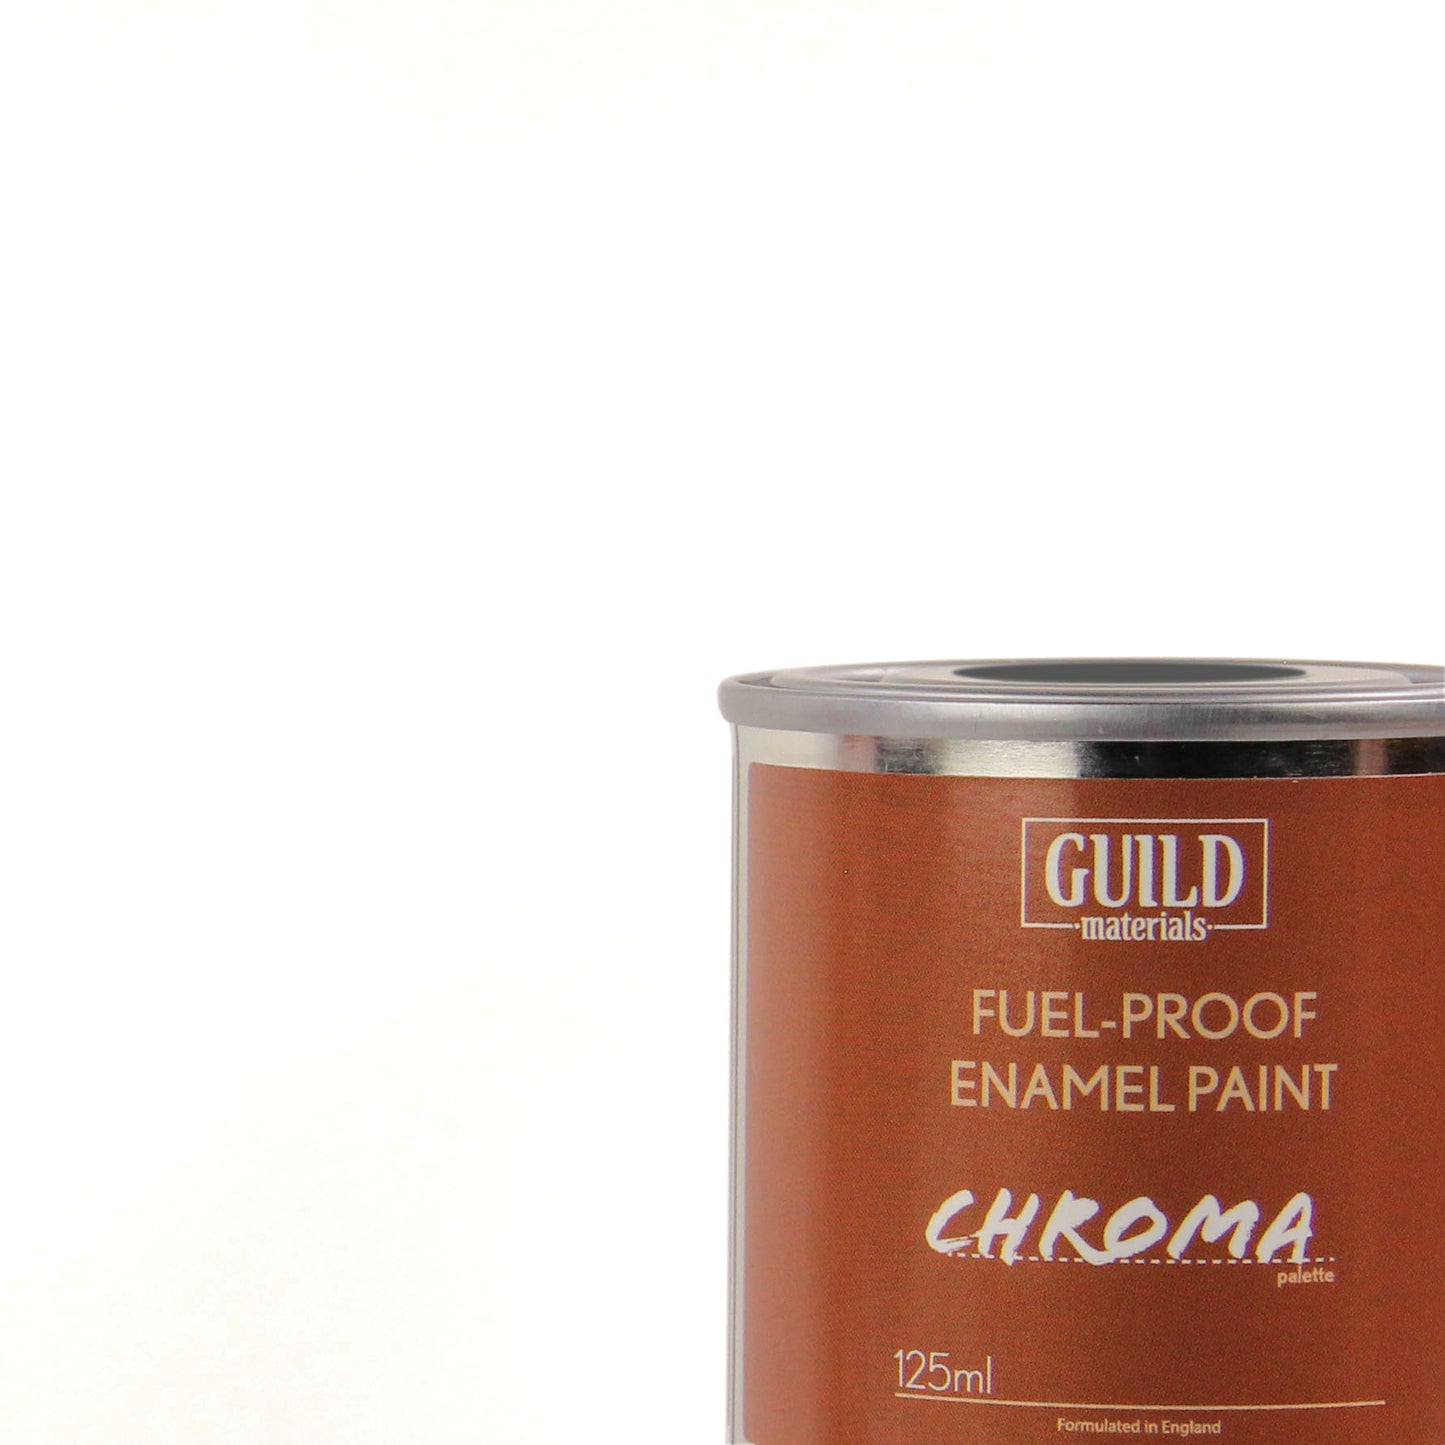 Chroma Enamel Fuelproof Paint Gloss White (125ml Tin)